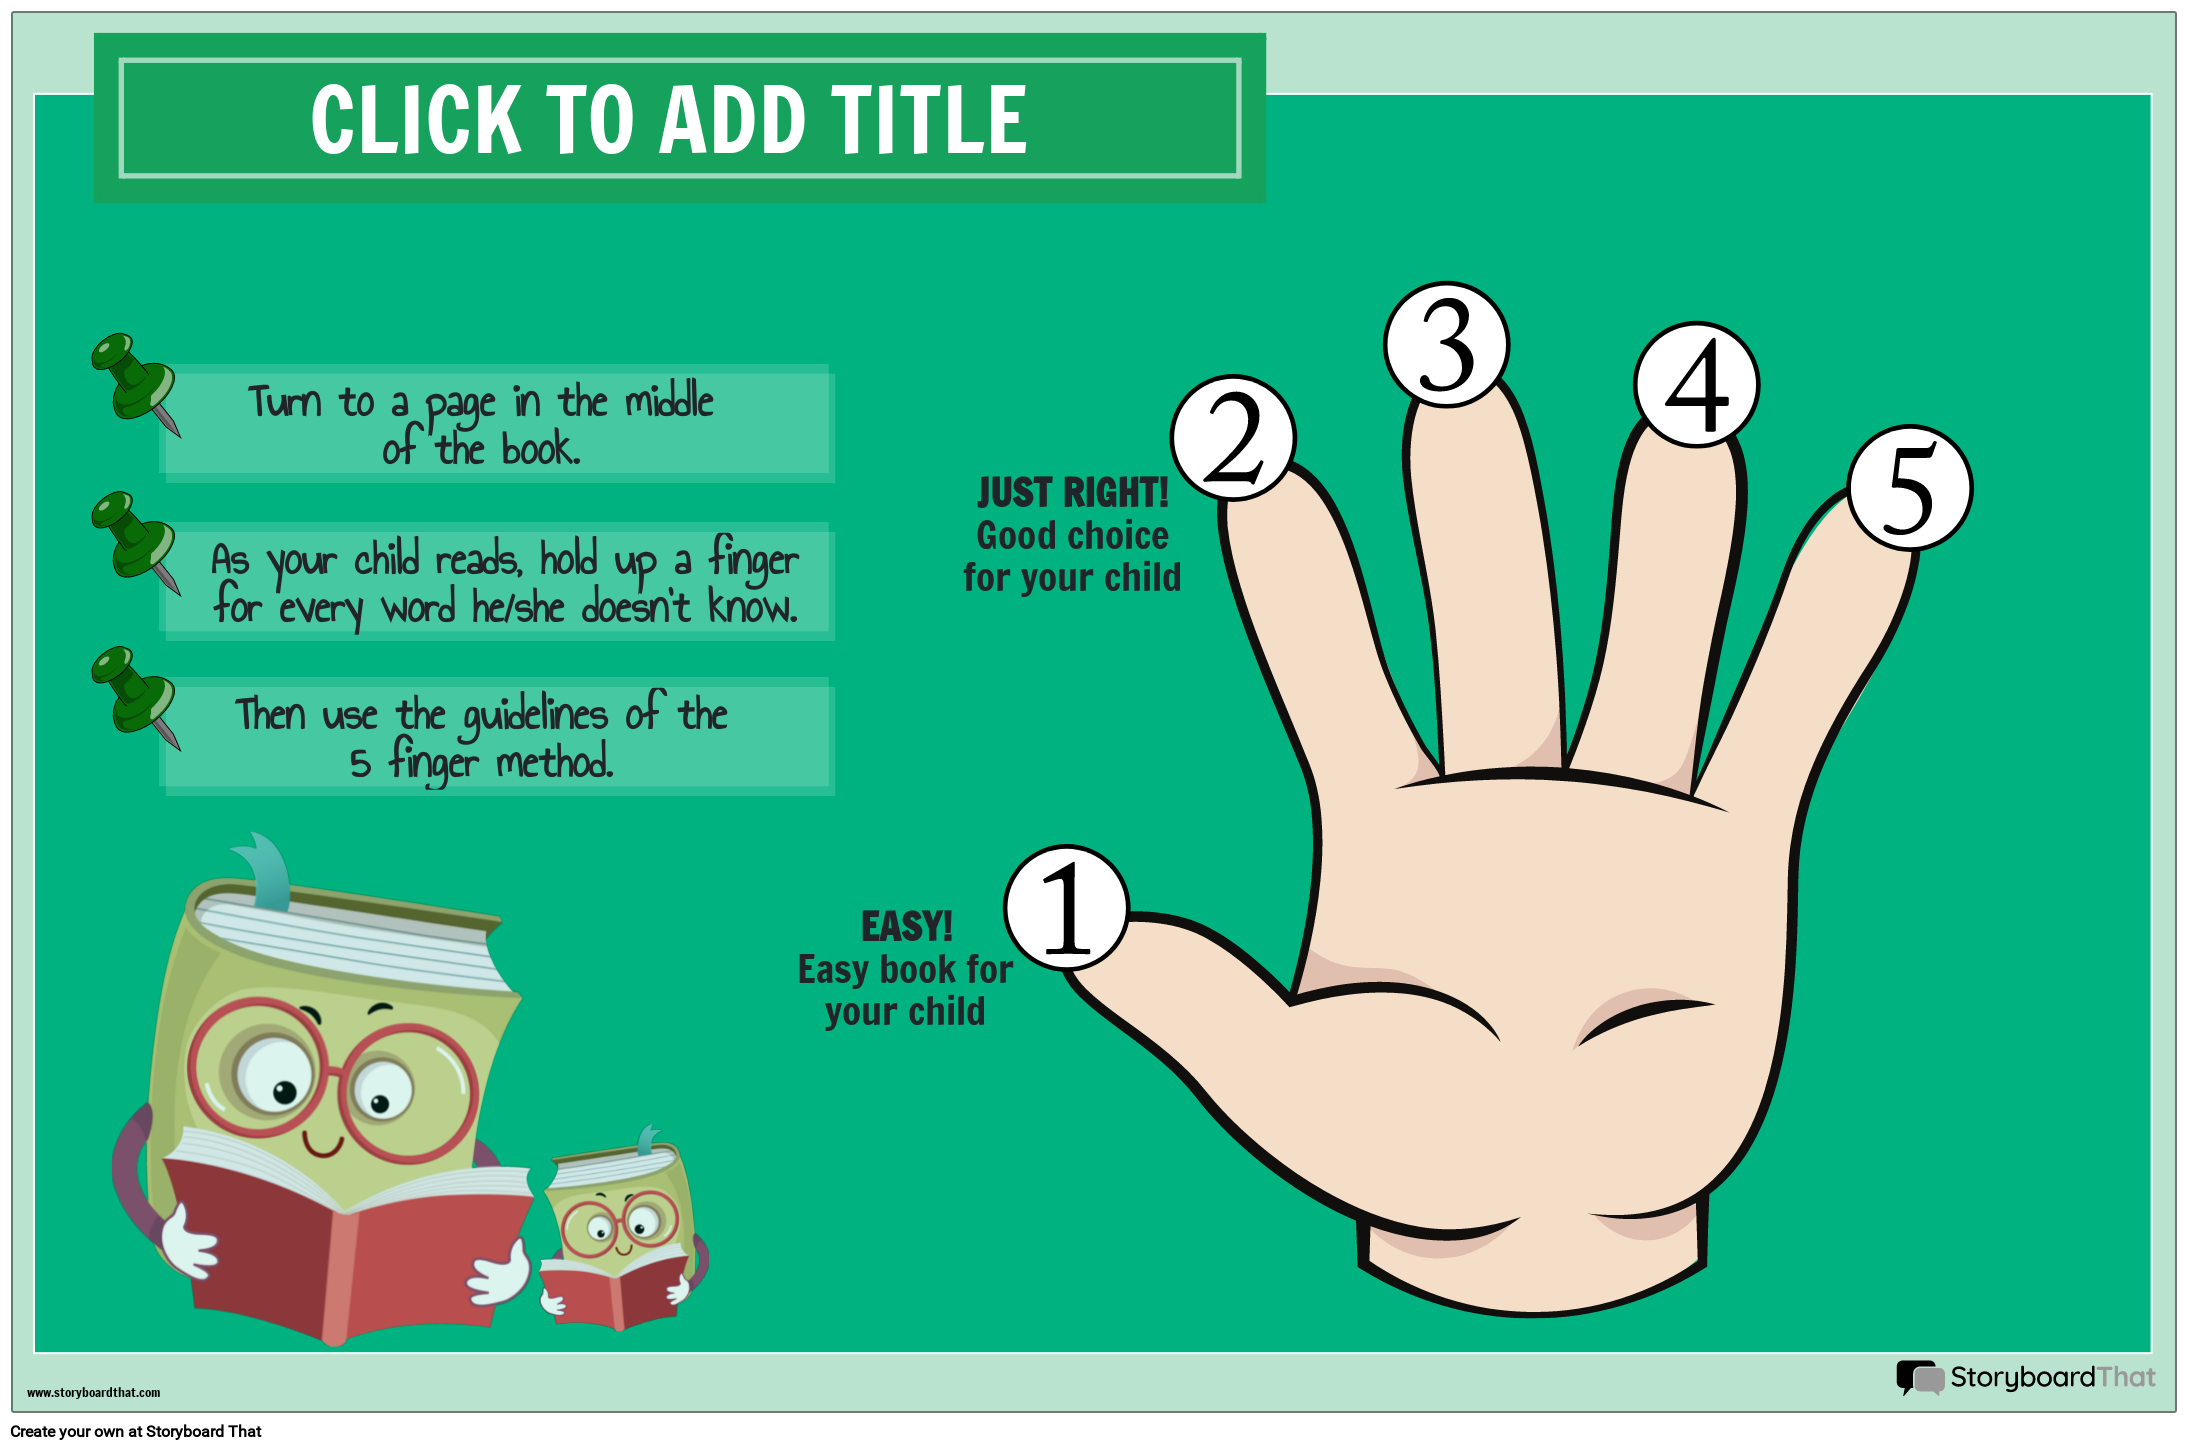 طريقة 5 أصابع - ملصق كتاب مناسب تمامًا